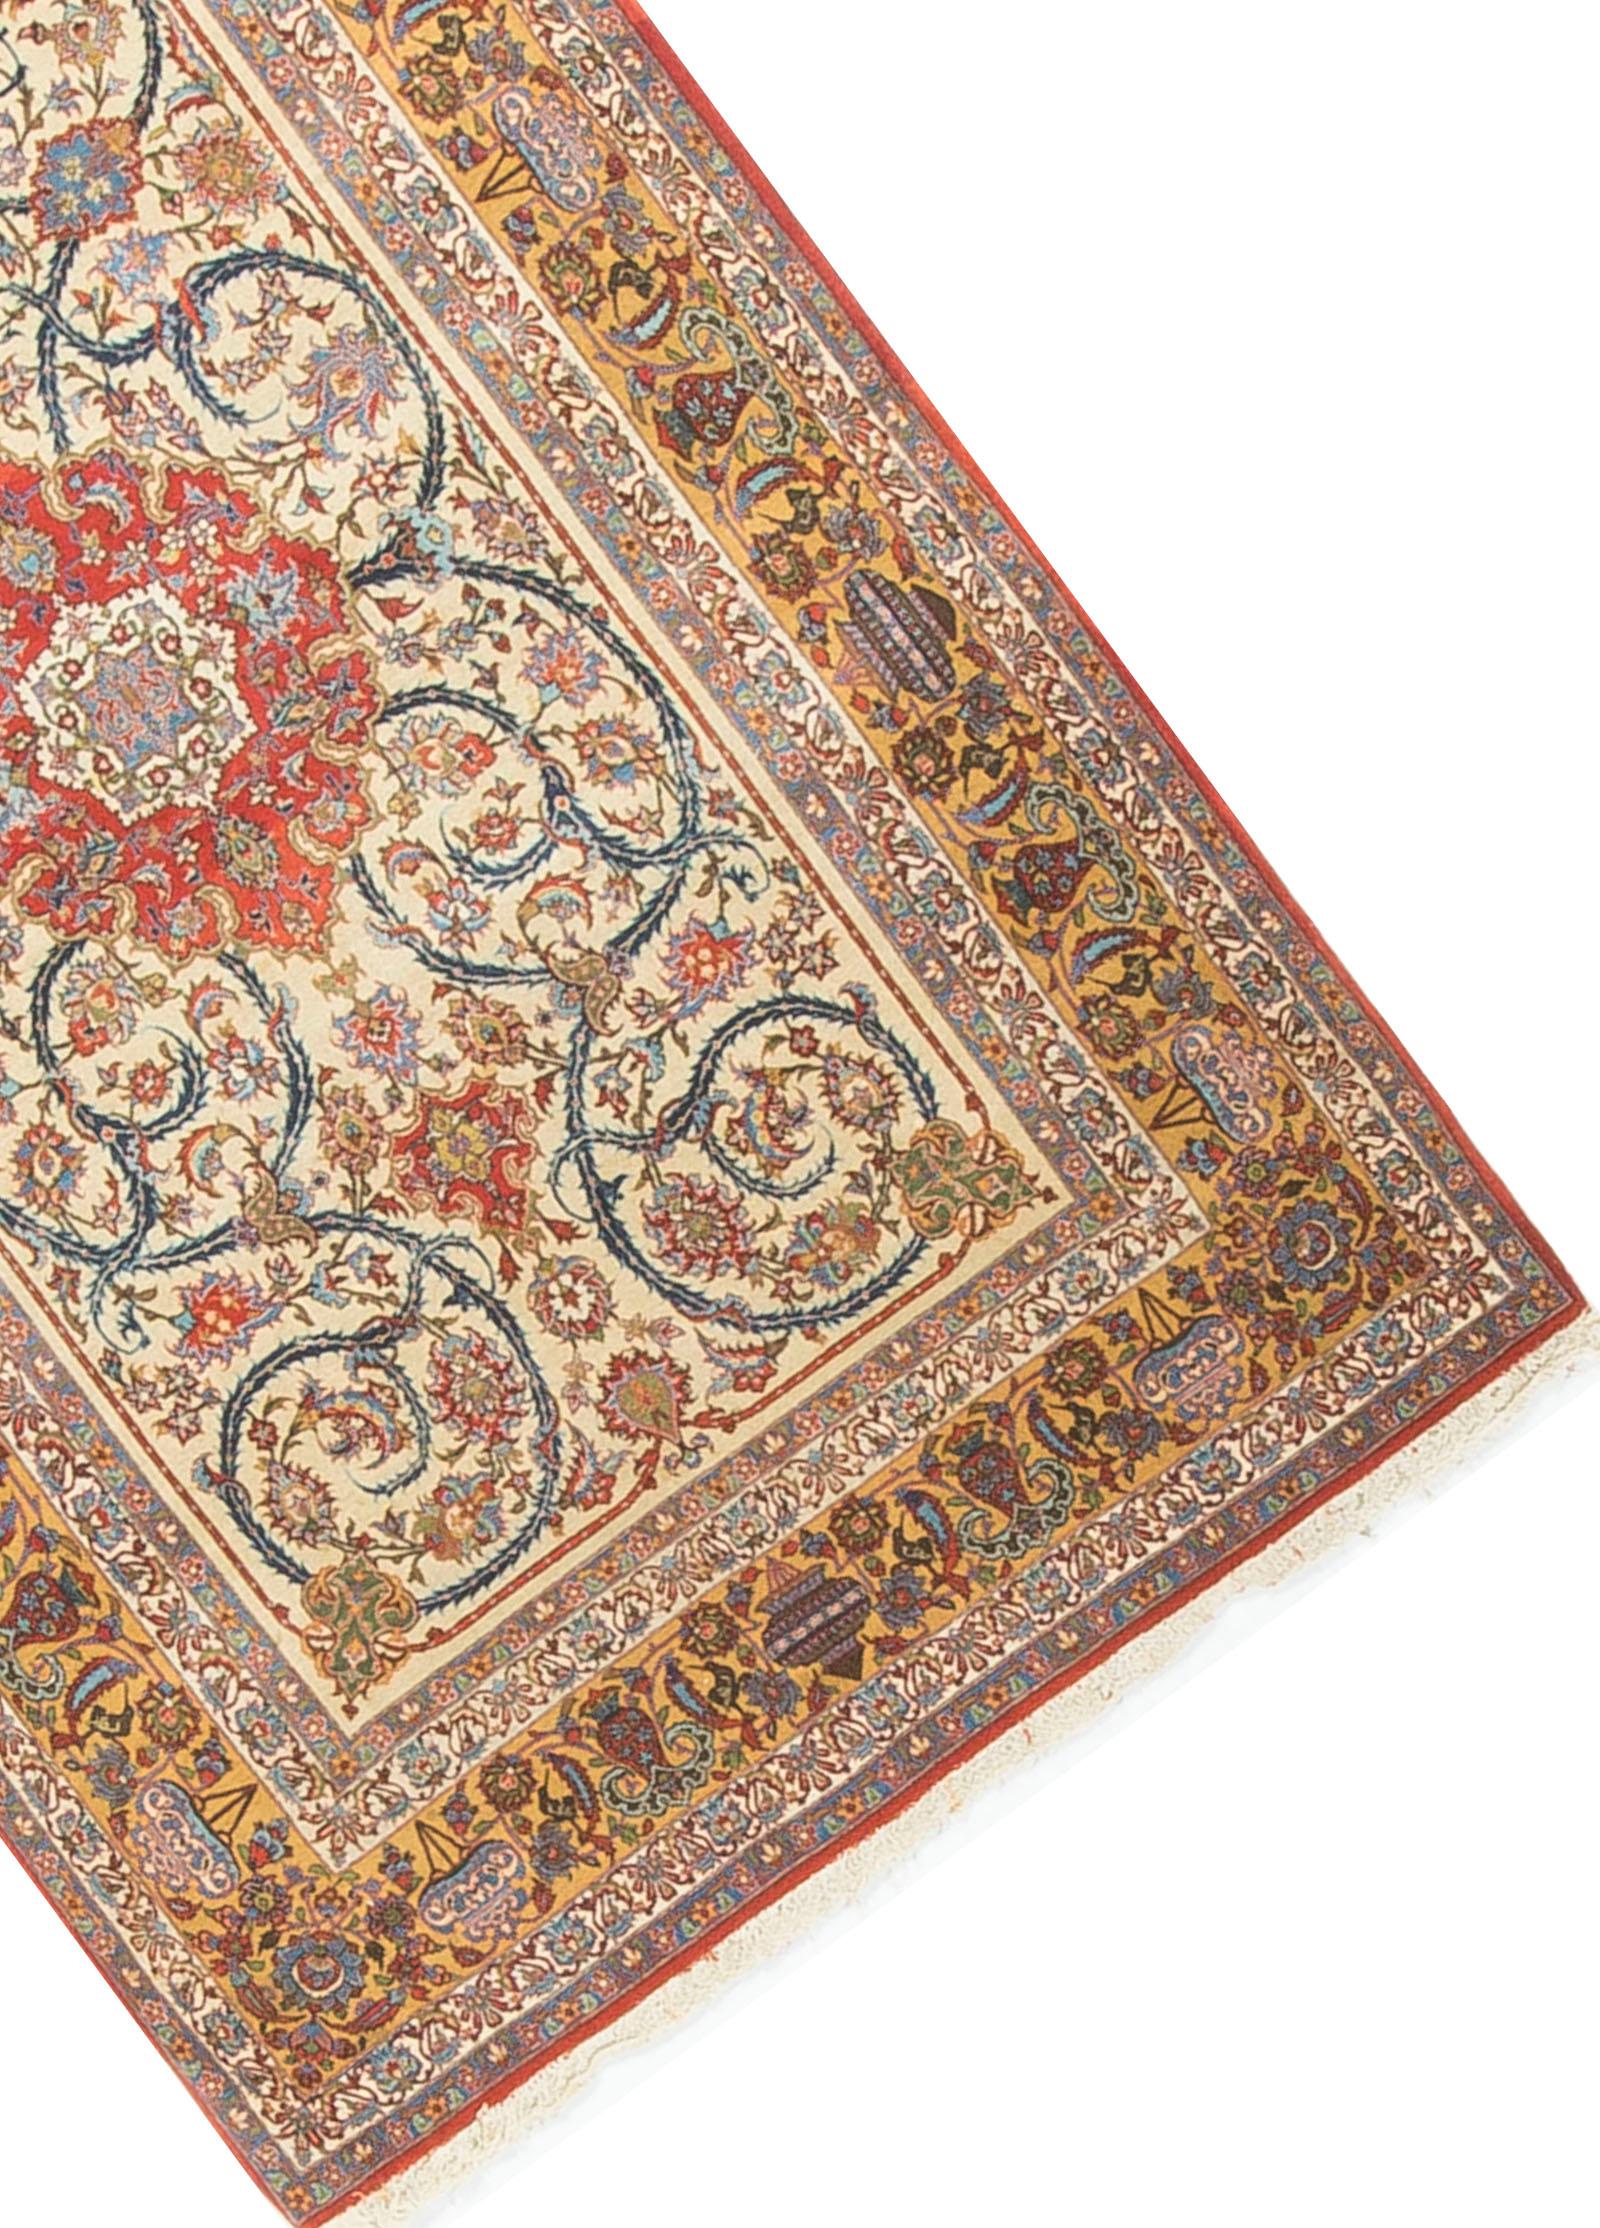 Ce joli petit tapis antique Isphahan a un fond ivoire avec un motif curviligne entourant un motif central rouge. Le tout entouré de multiples bordures en or et en ivoire.